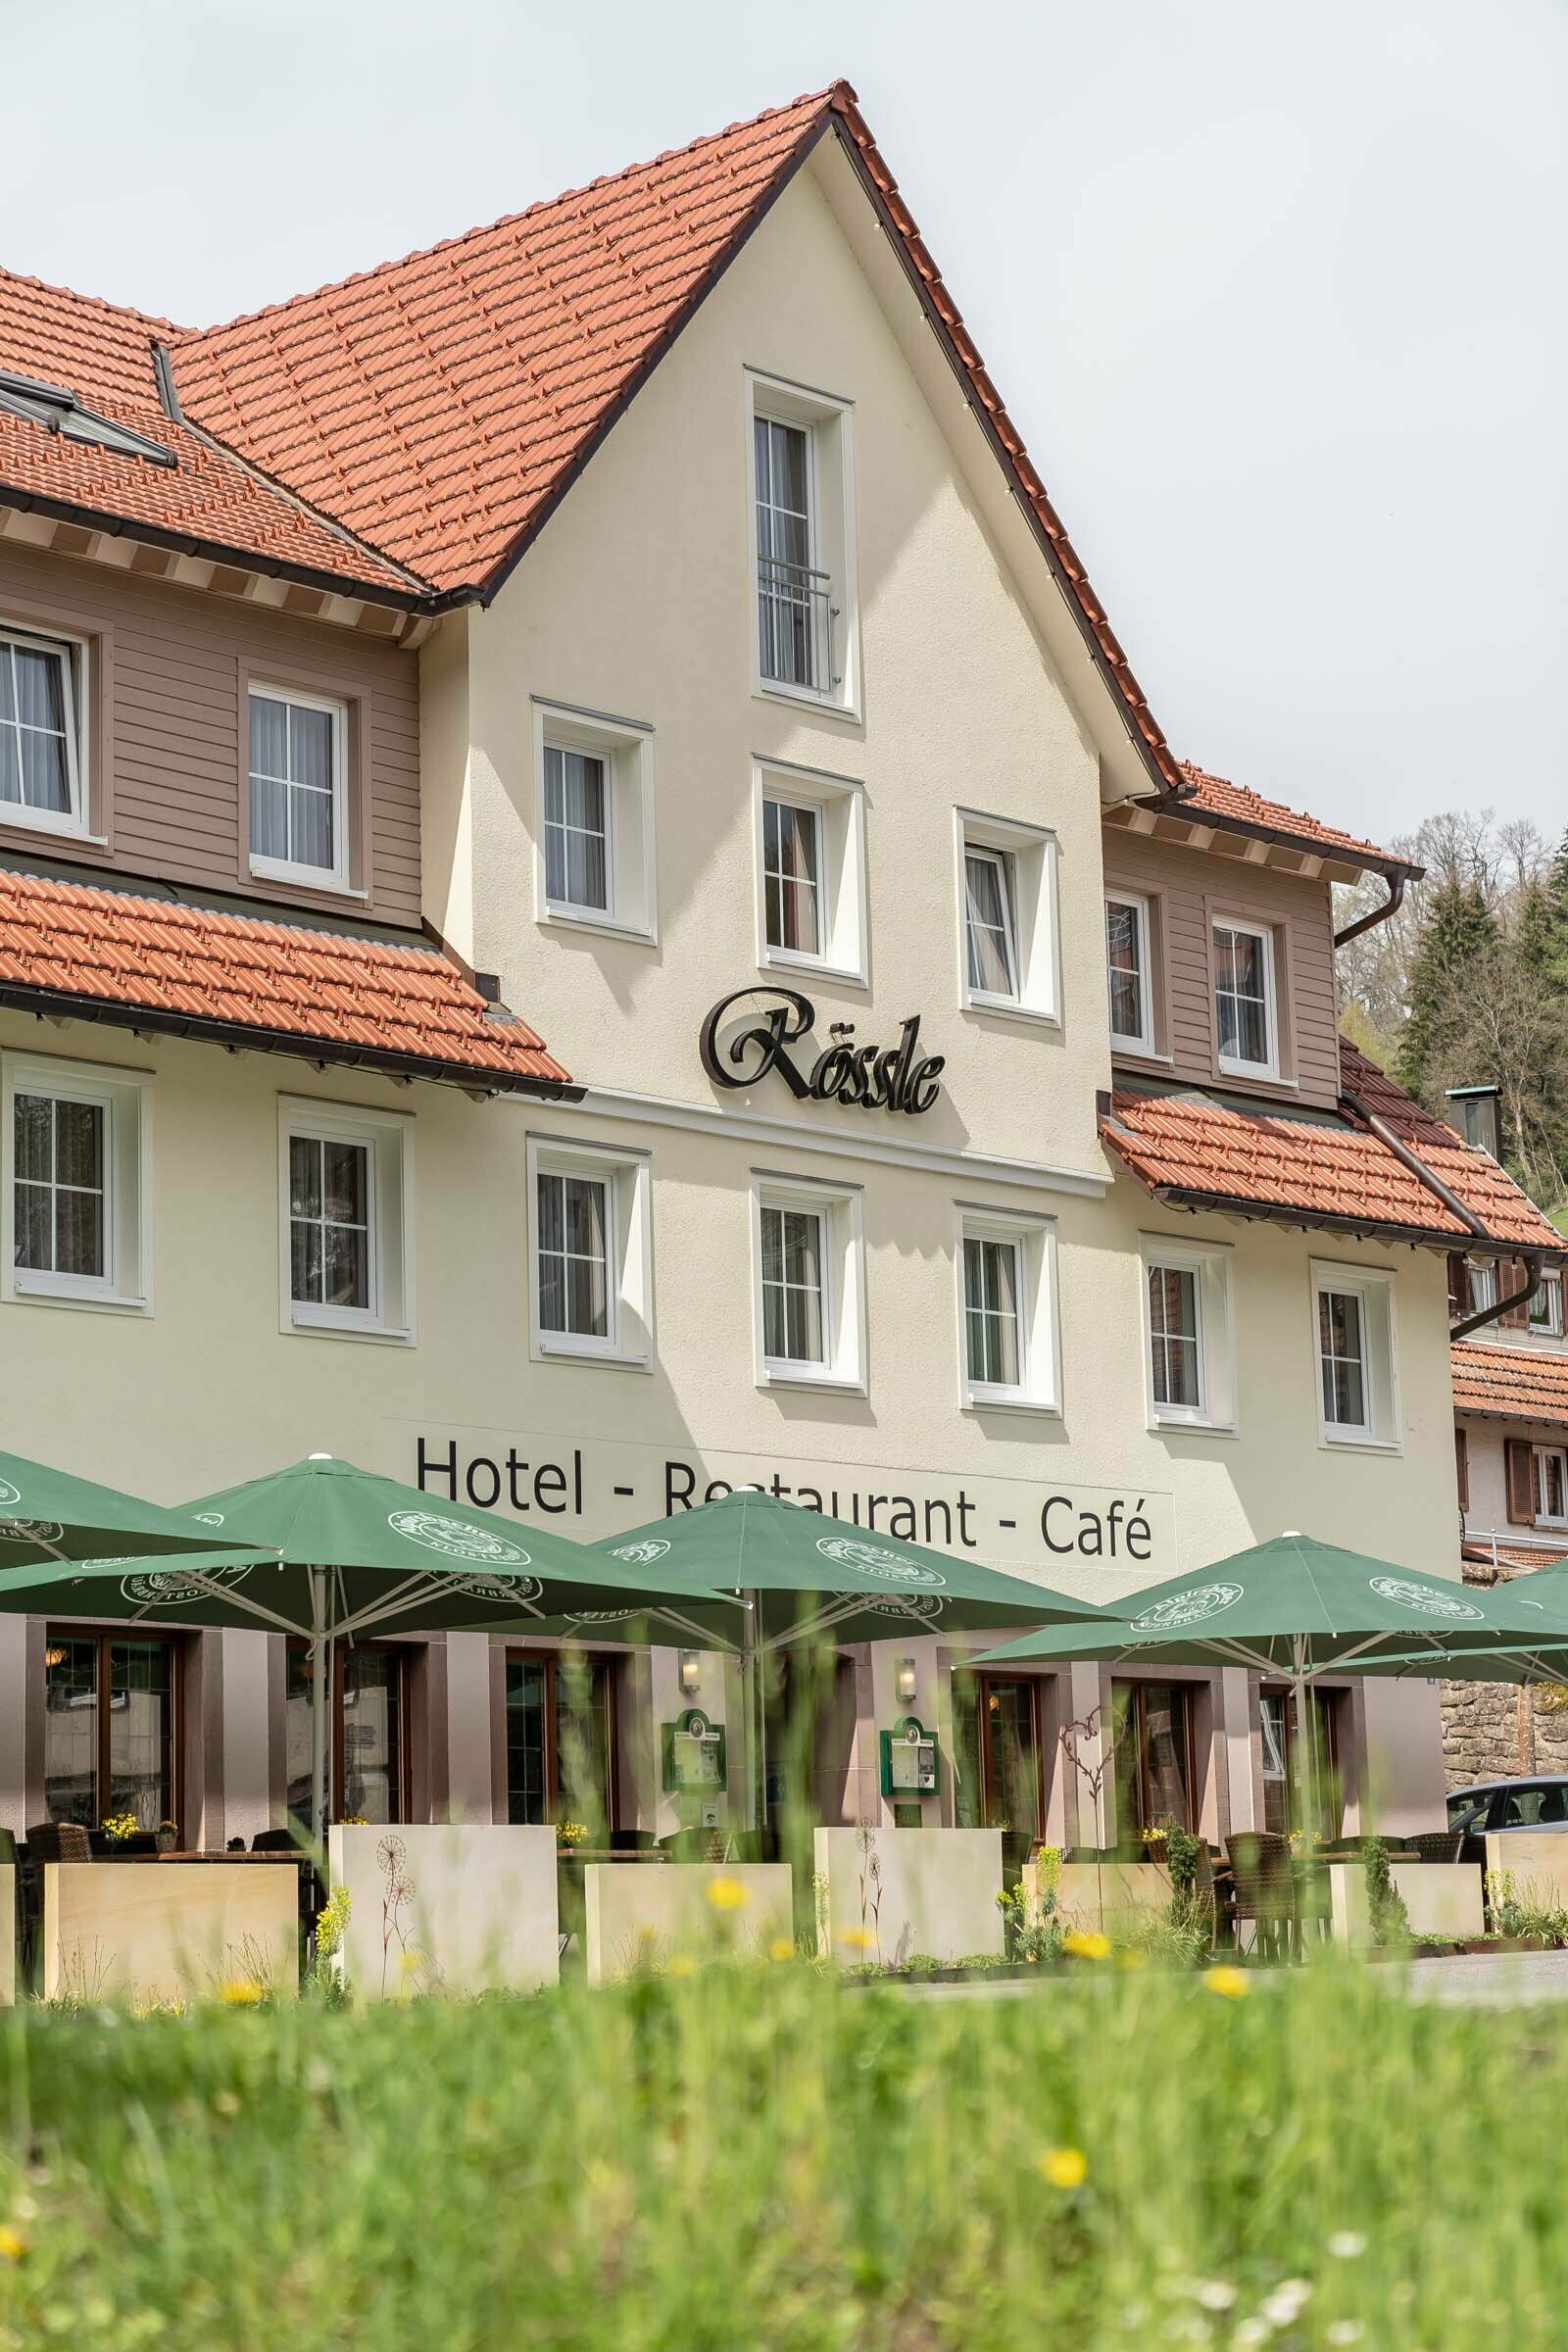 3 Tage Auszeit im Schwarzwald – Hotel Rössle Berneck  in Altensteig, Baden-Württemberg inkl. Halbpension